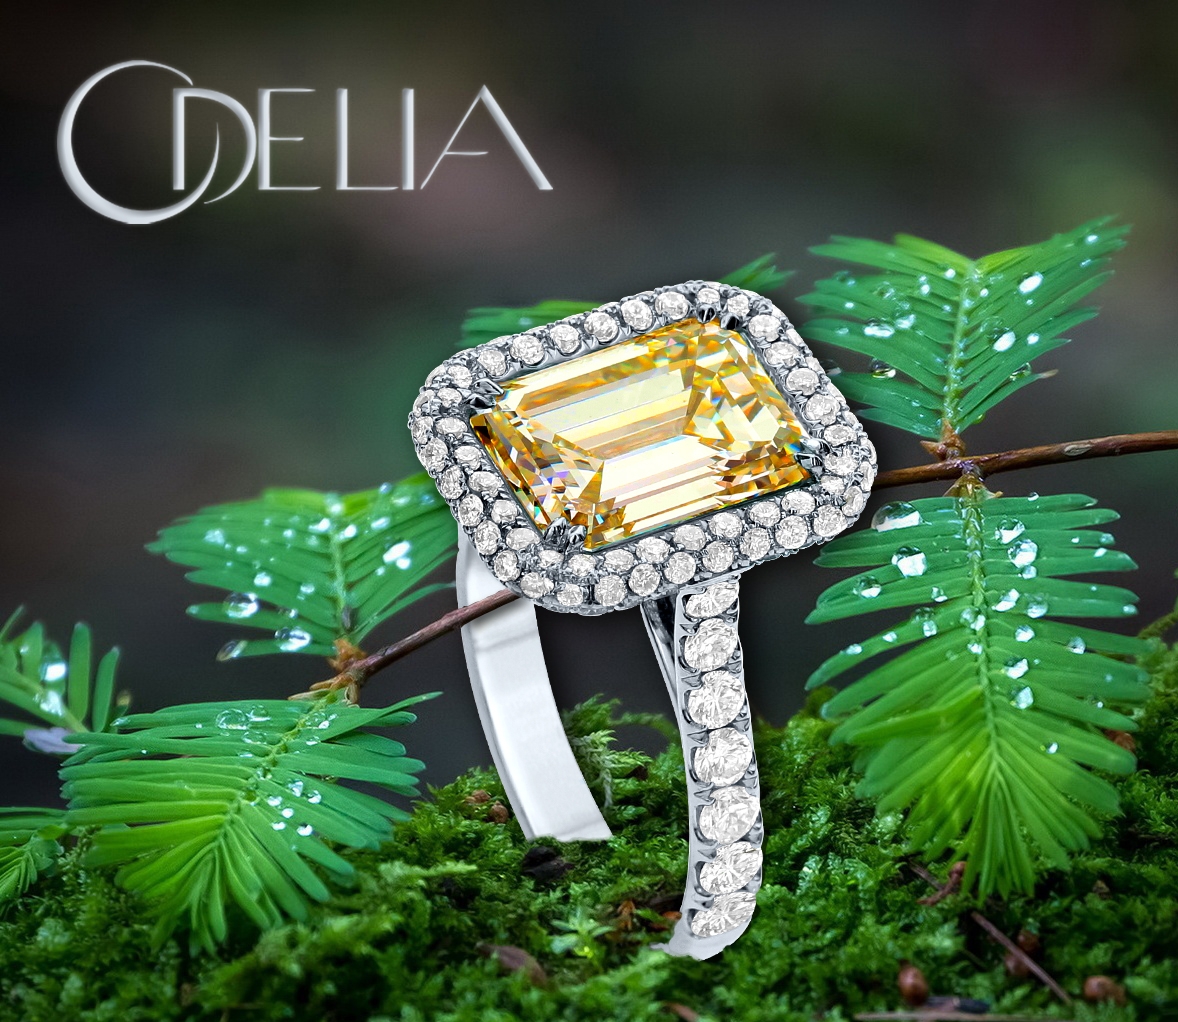 Odelia Jewelry